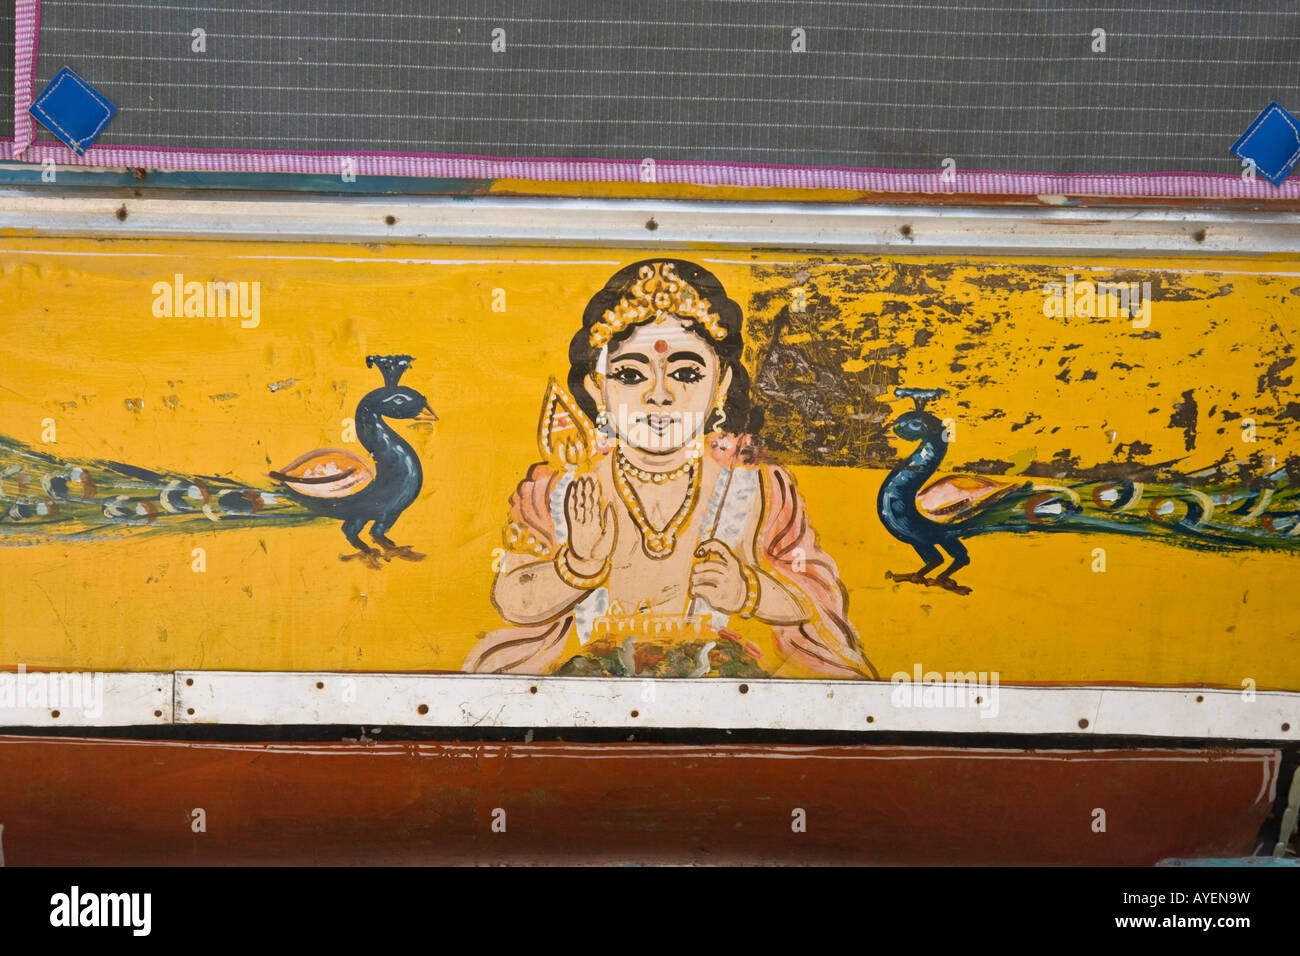 Décor peint à l'arrière d'un autorickshaw à Madurai Inde du Sud Banque D'Images